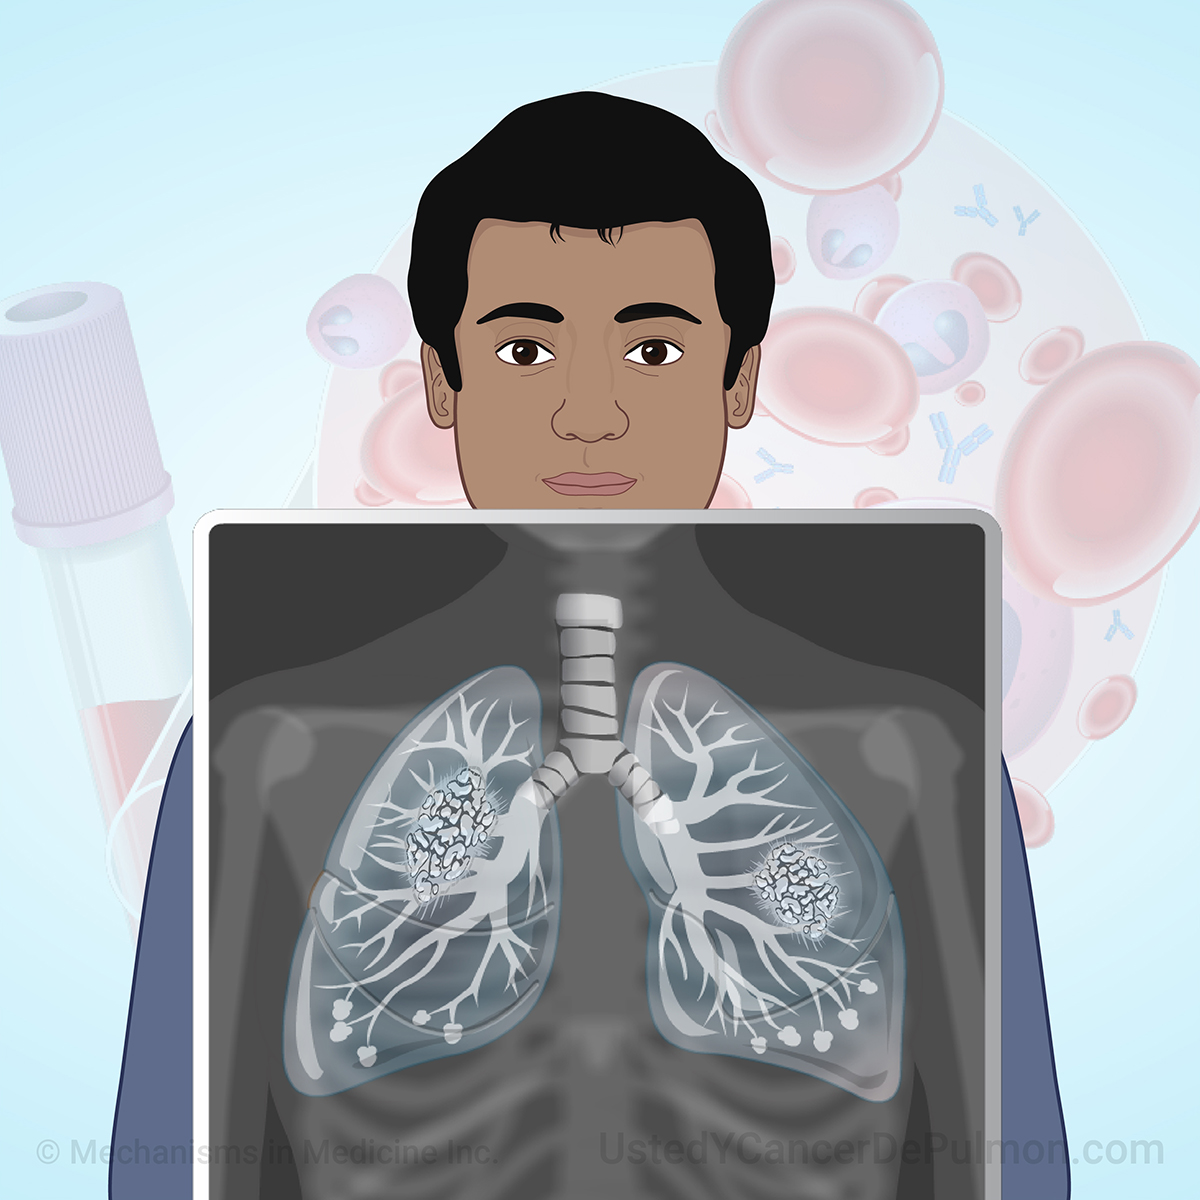 Diagnóstico y estadificación del cáncer de pulmón